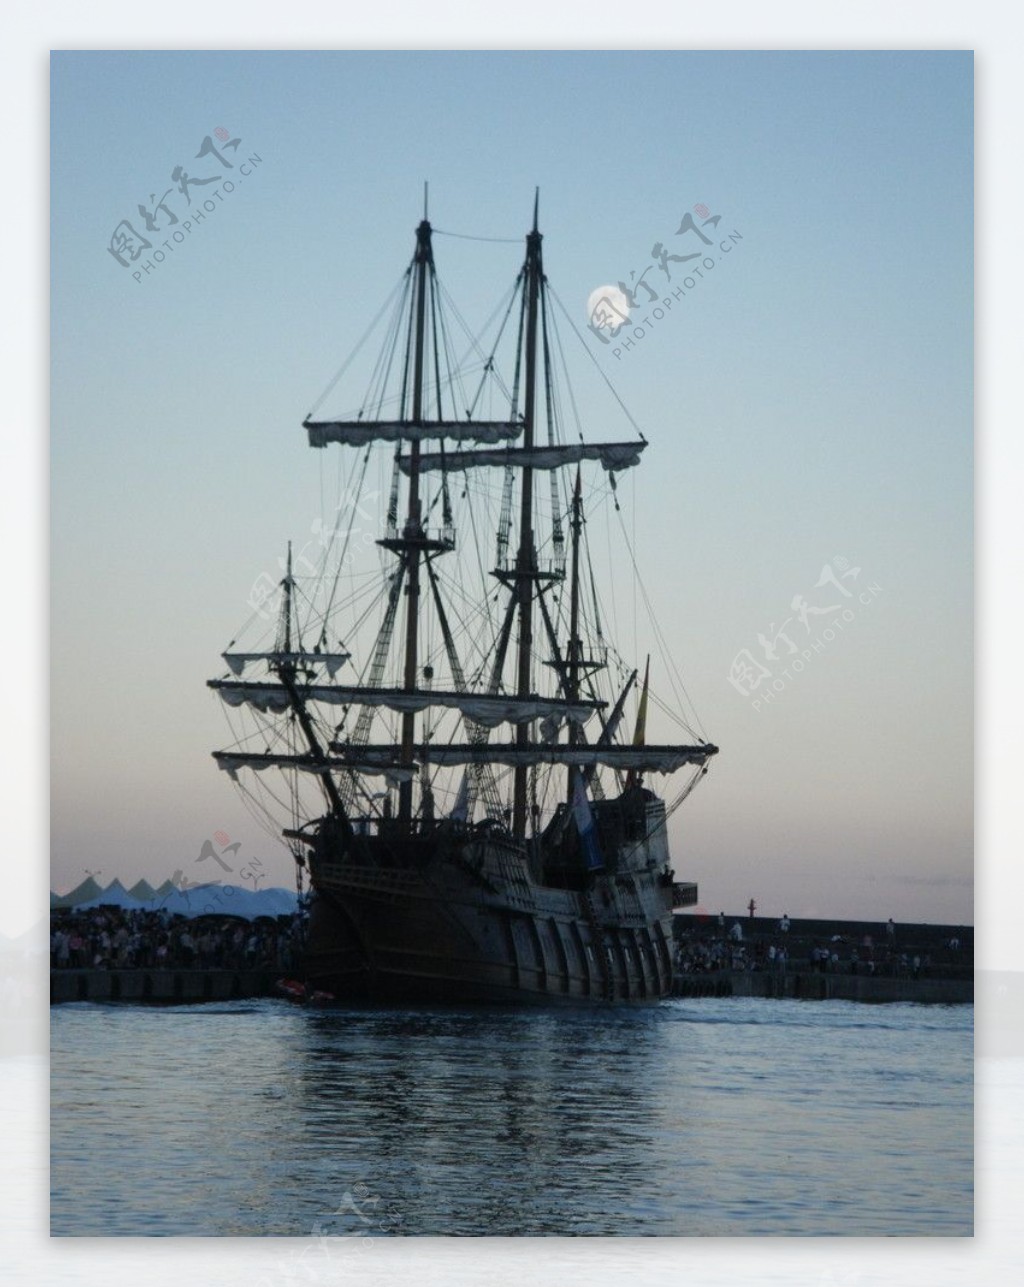 夕陽下的仿古帆船图片